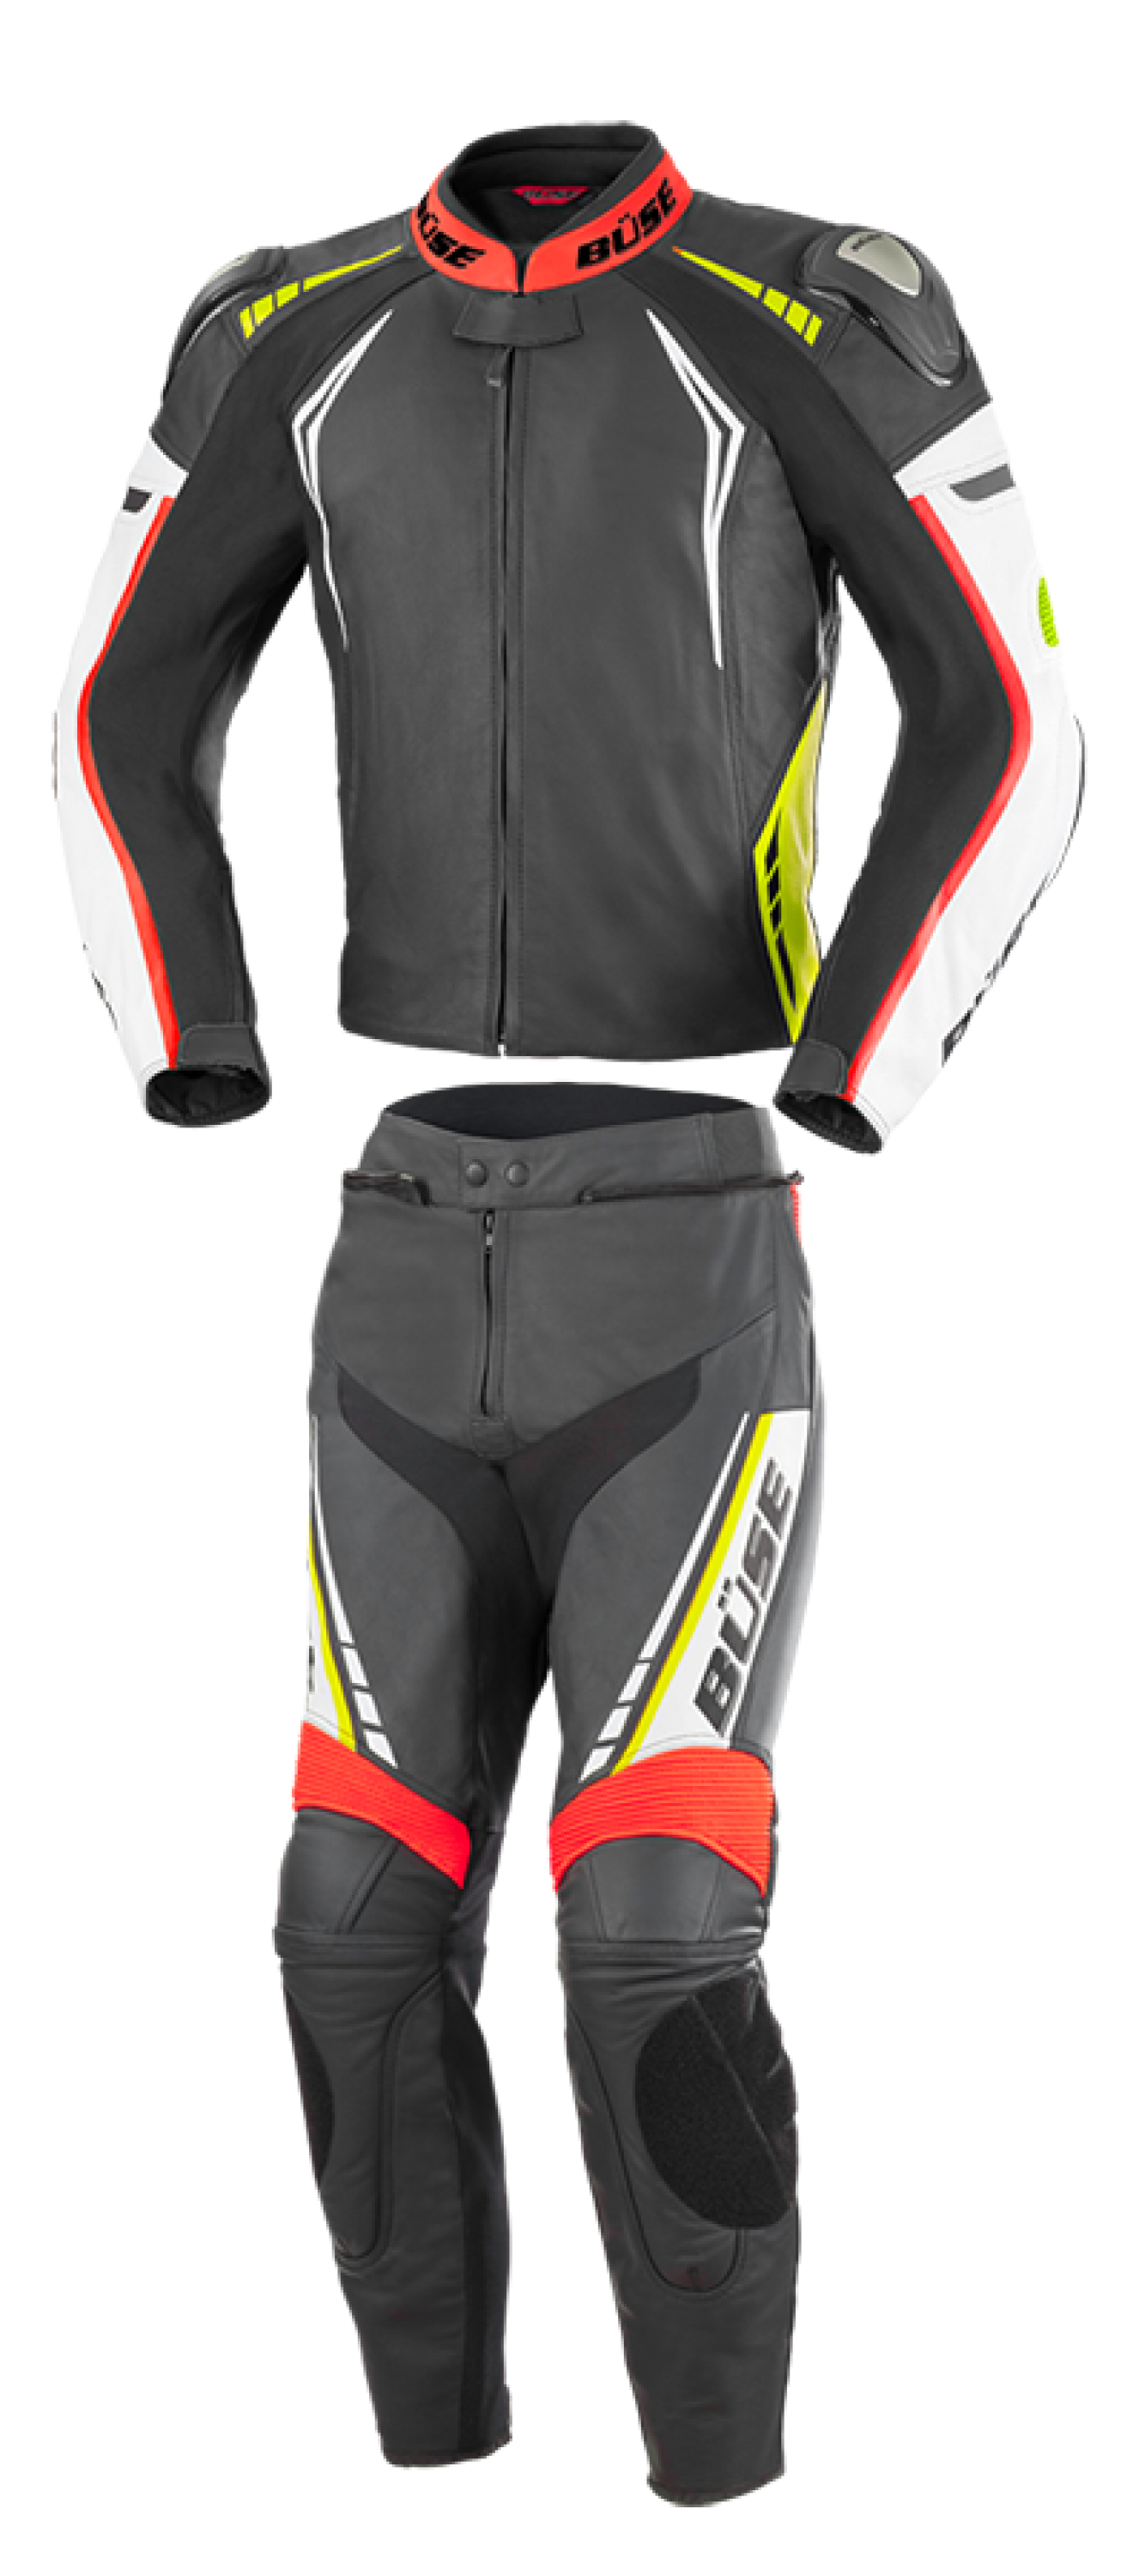 BÜSE Silverstone Pro leather suit 2pcs.